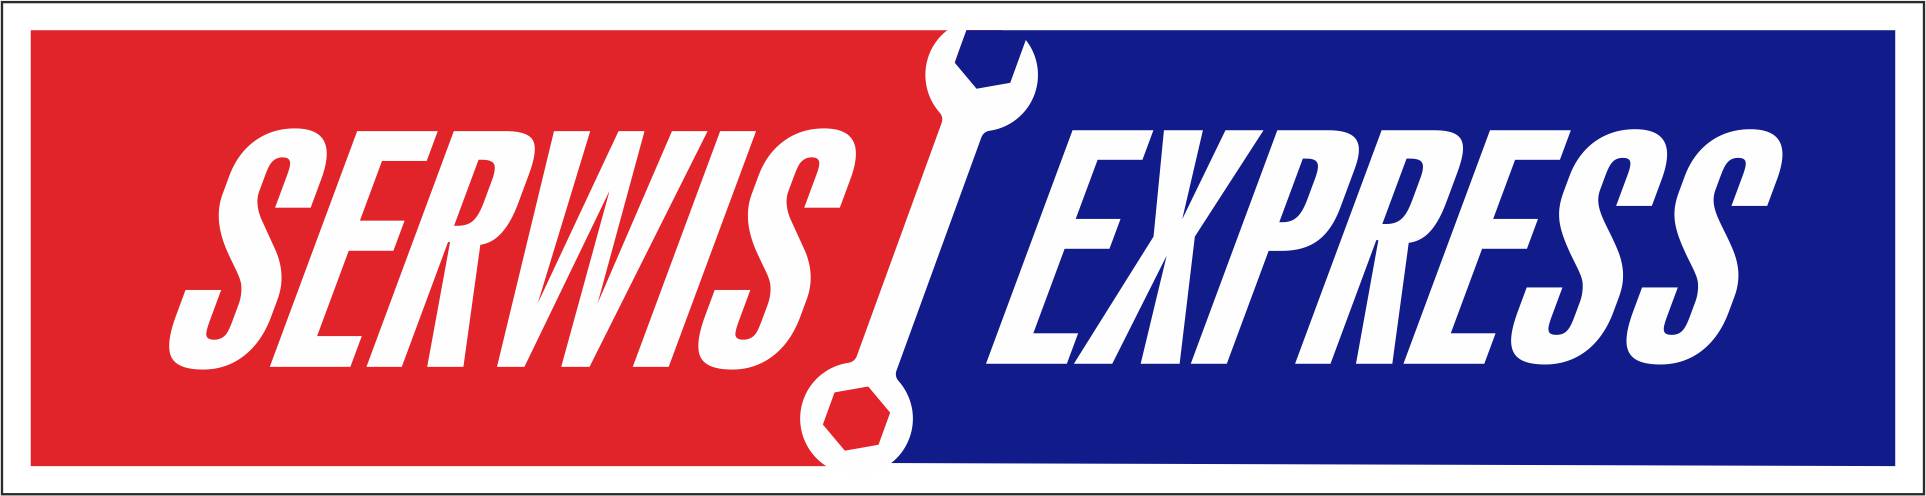 SeEx logo